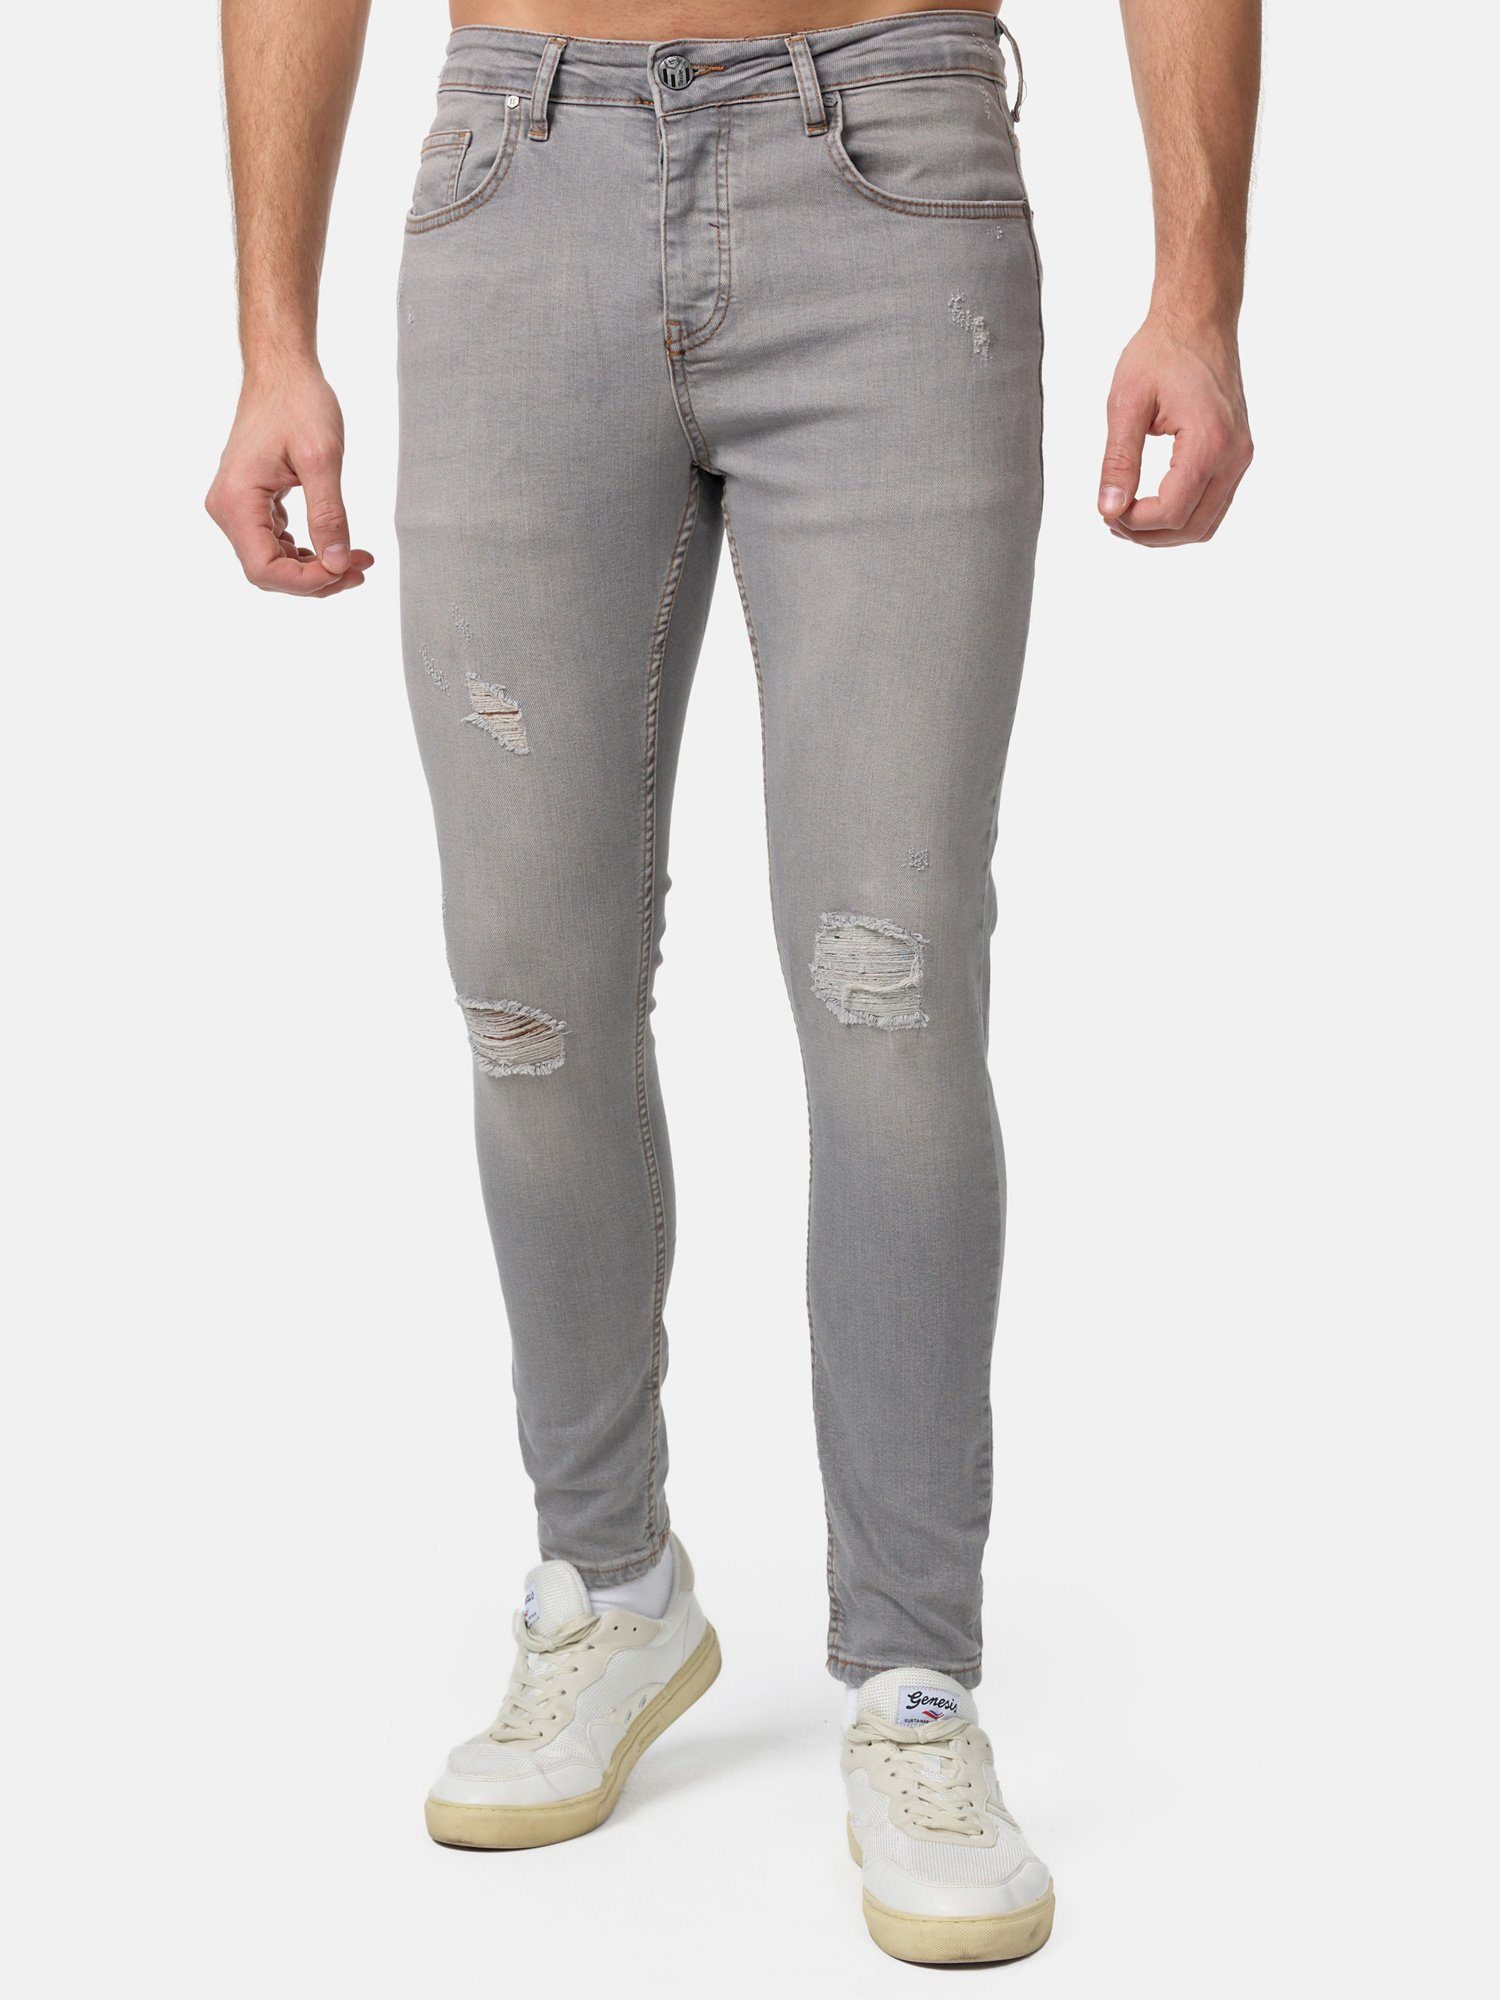 Tazzio Skinny-fit-Jeans 17514 im Destroyed-Look grau